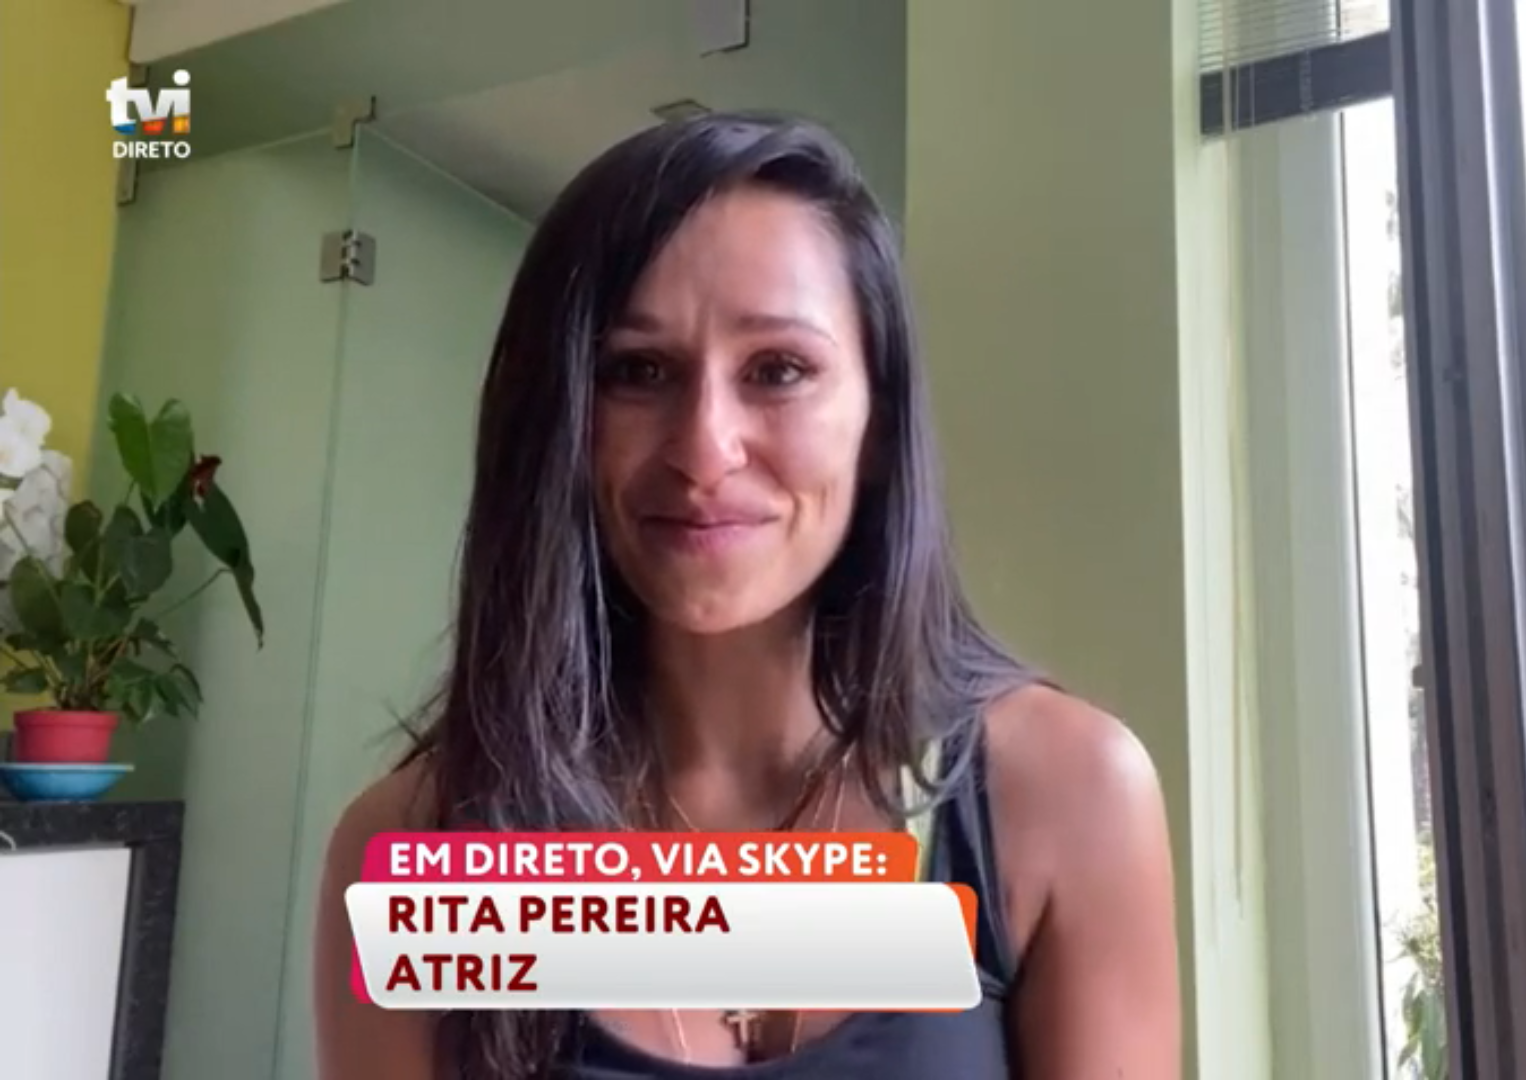 rita pereira Rita Pereira emociona-se a falar do pai: "Estou de coração muito triste"